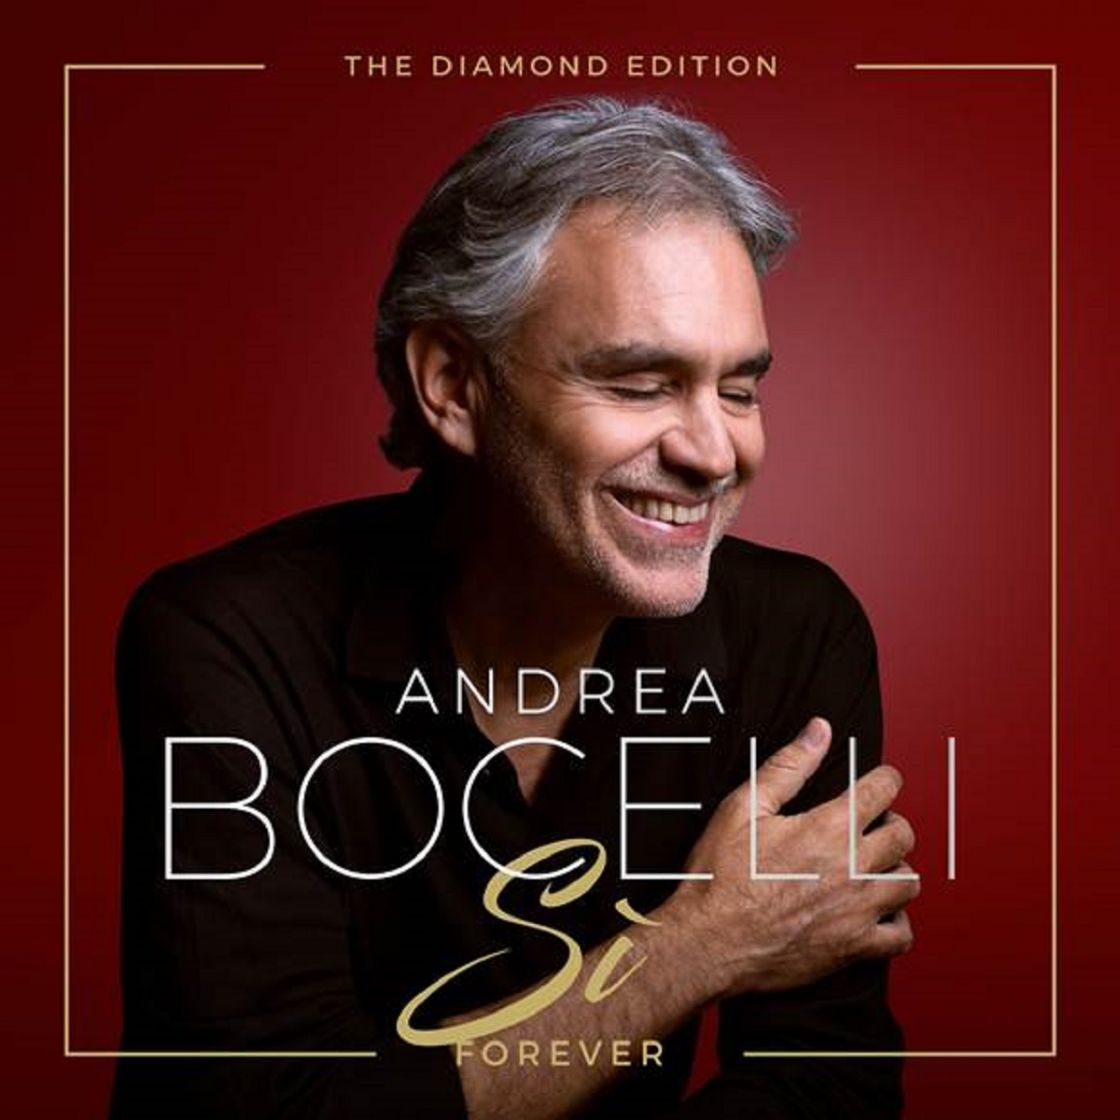 ANDREA BOCELLI - “SI FOREVER: THE DIAMOND EDITION”